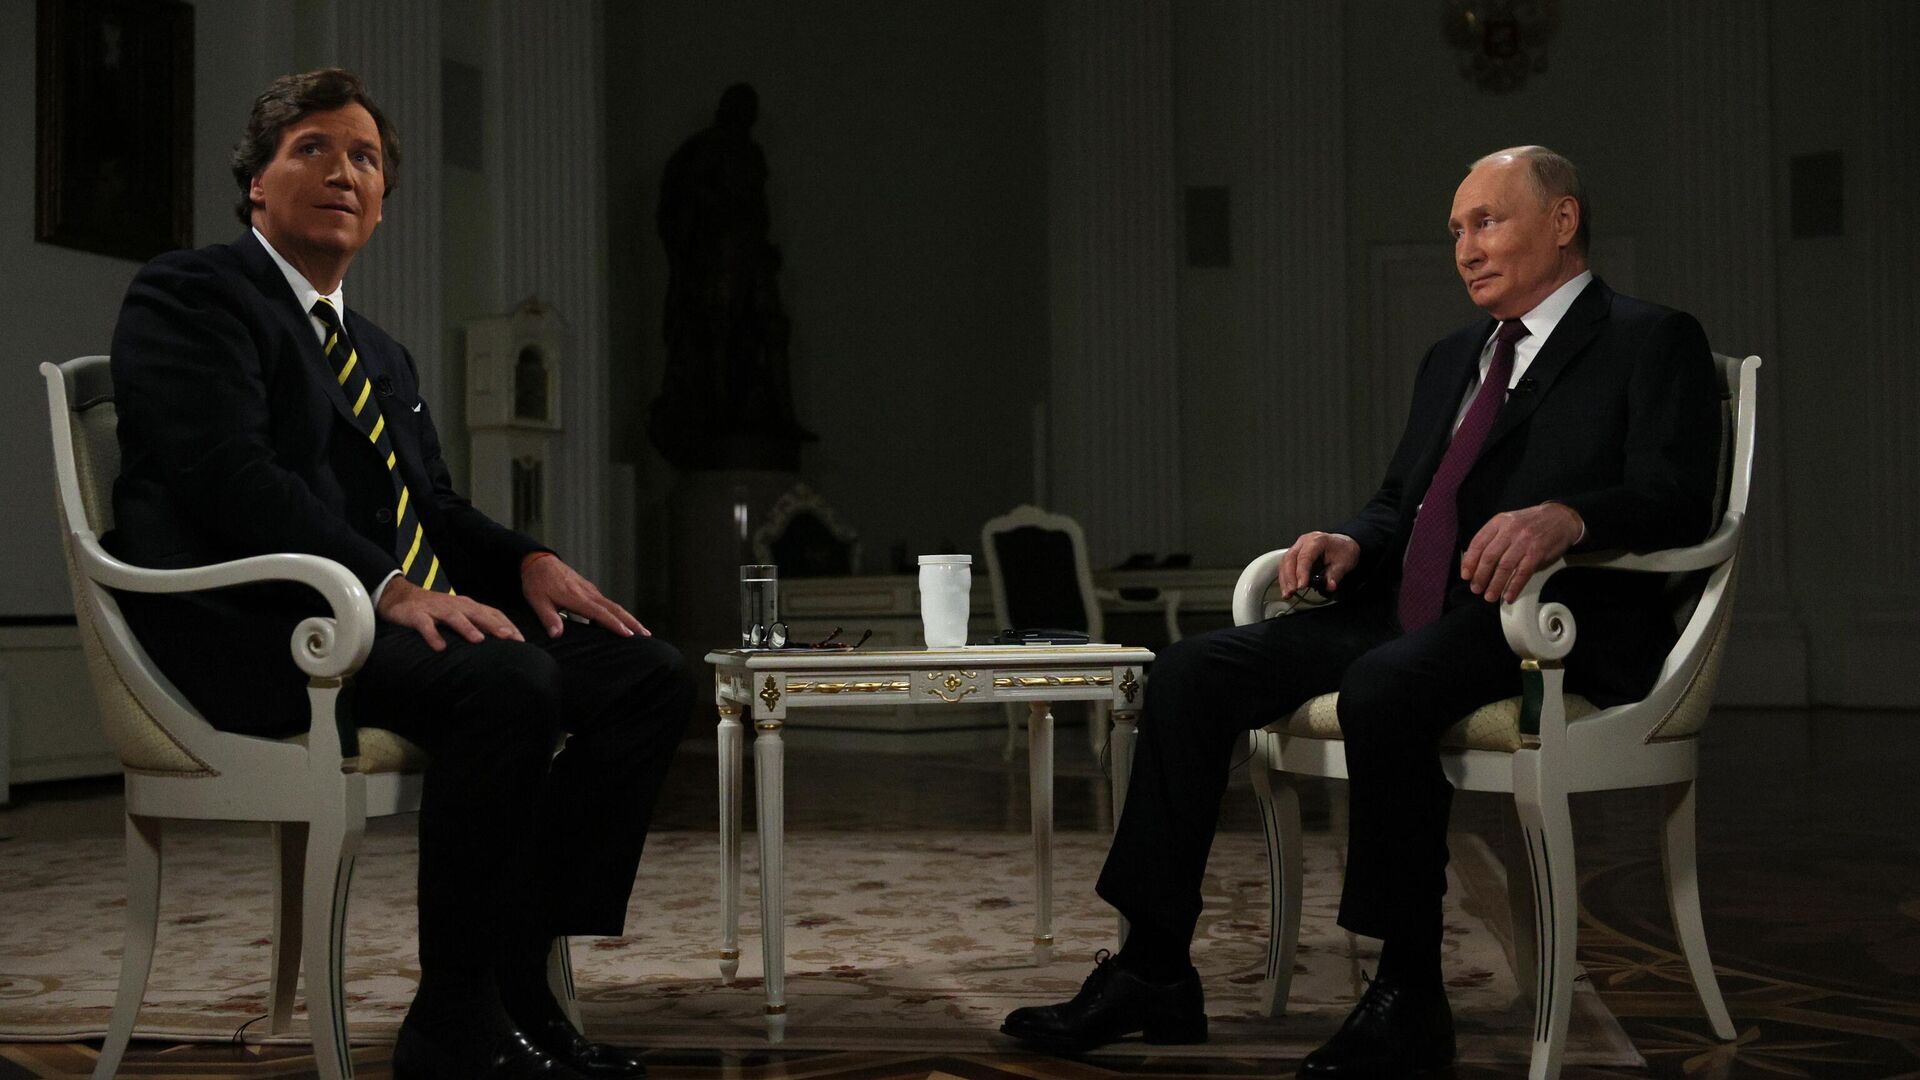 Интервью Путина и "четвёртый раздел Польши"